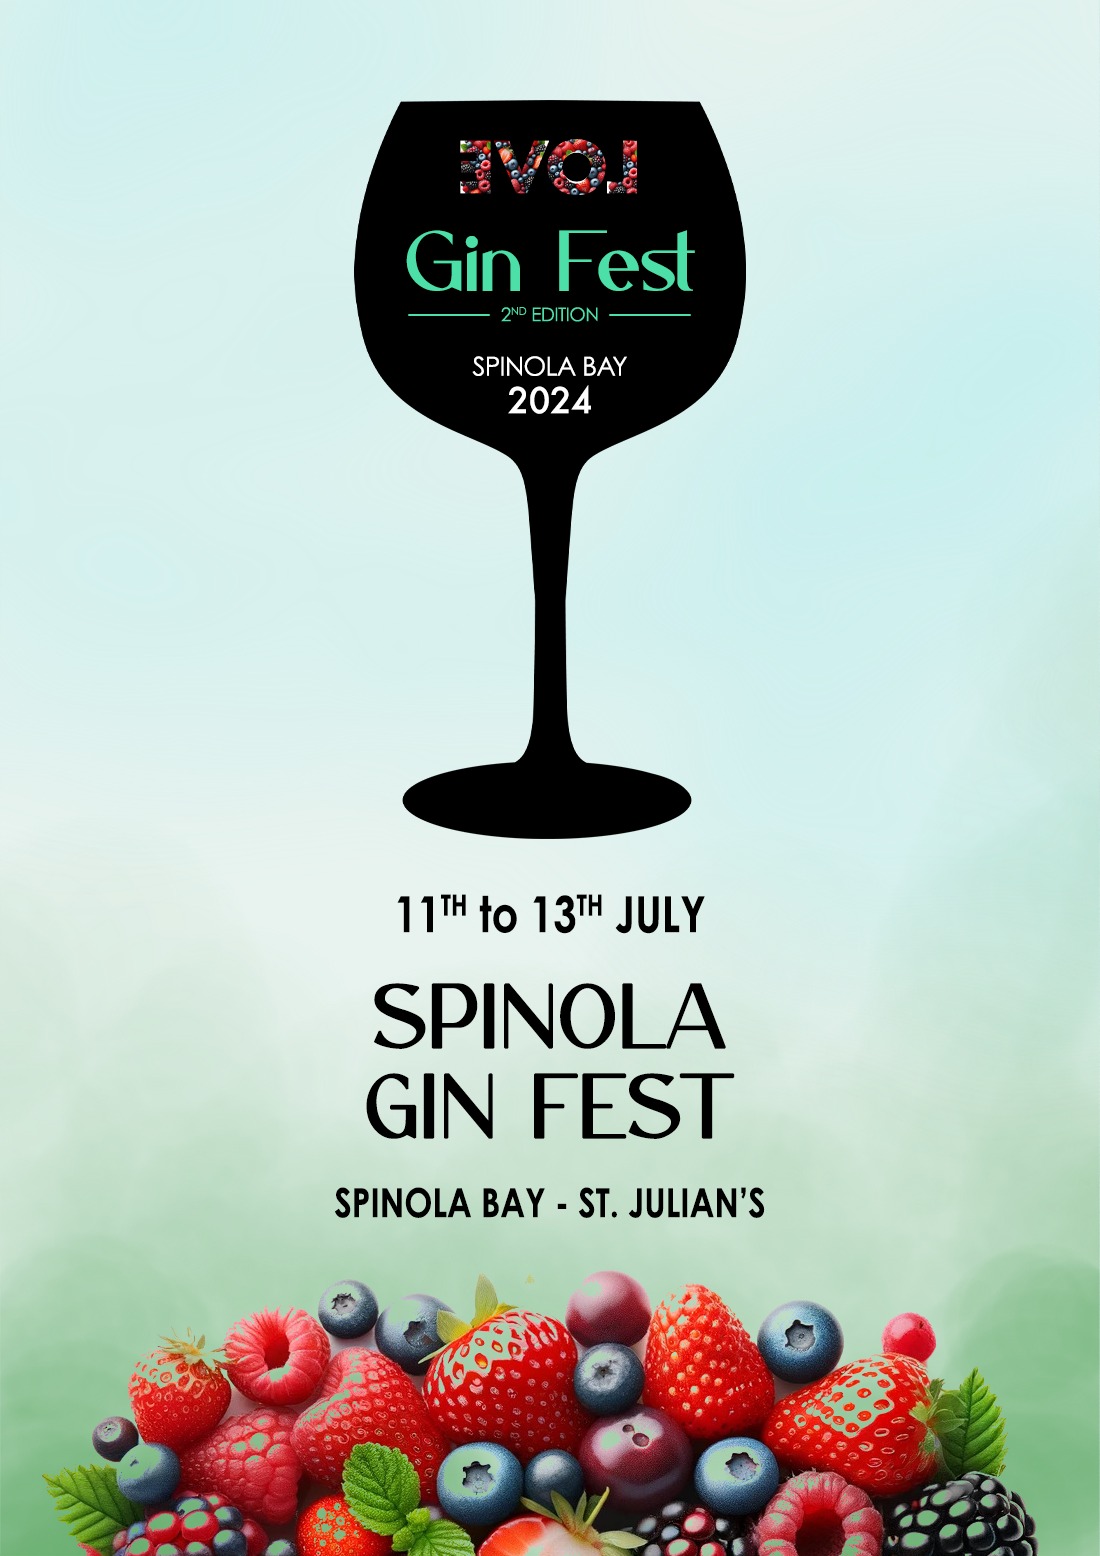 Spinola Gin Fest 2024